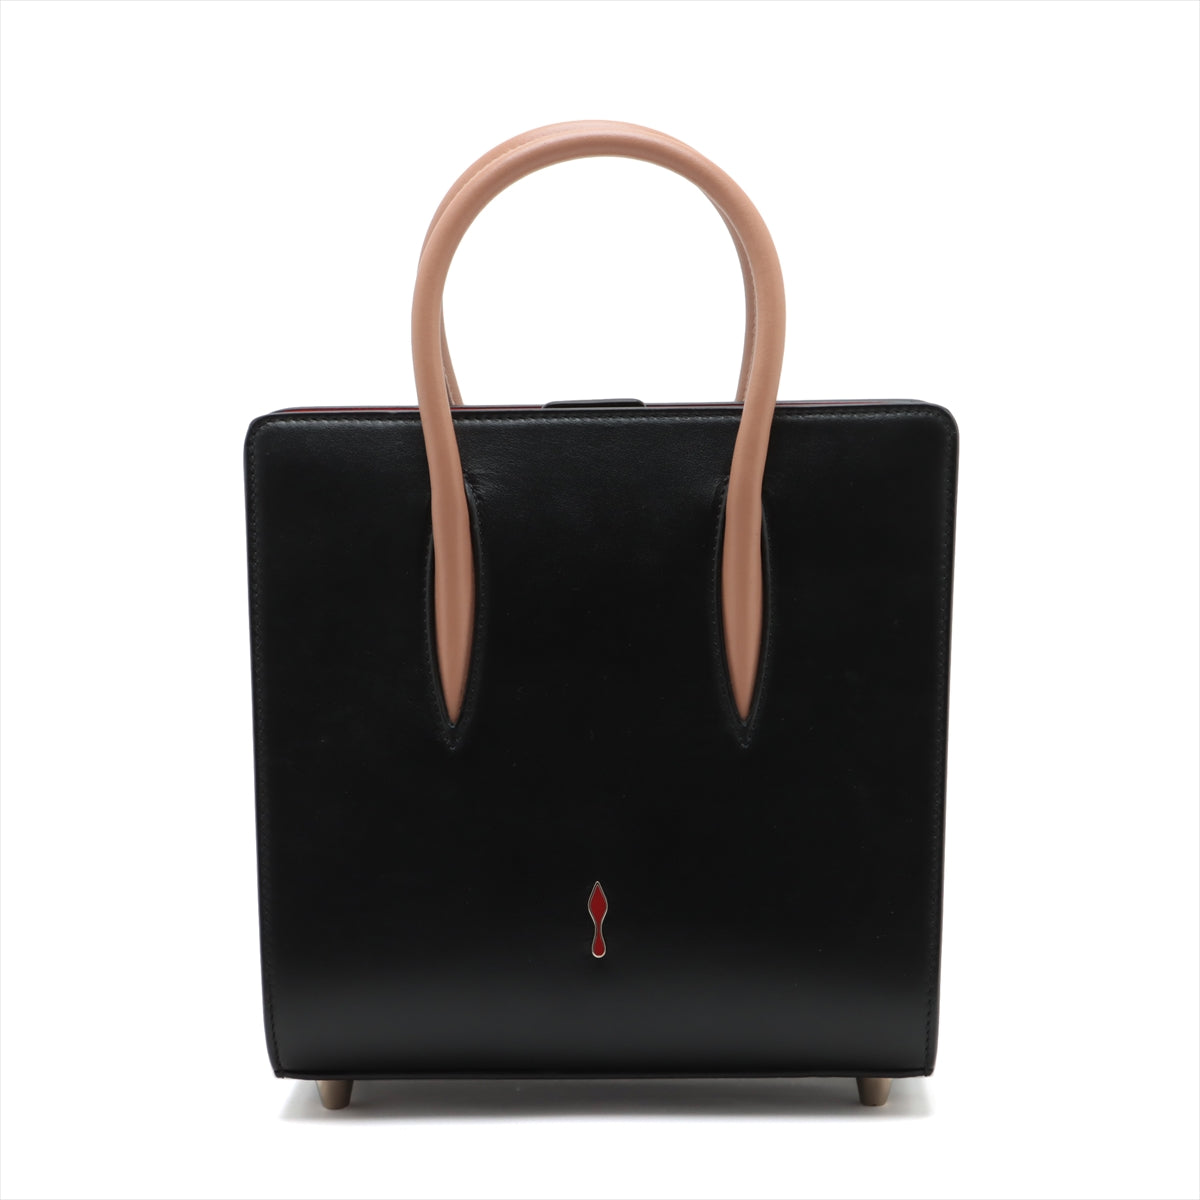 Christian Louboutin Paloma Small Leather 2way handbag Black